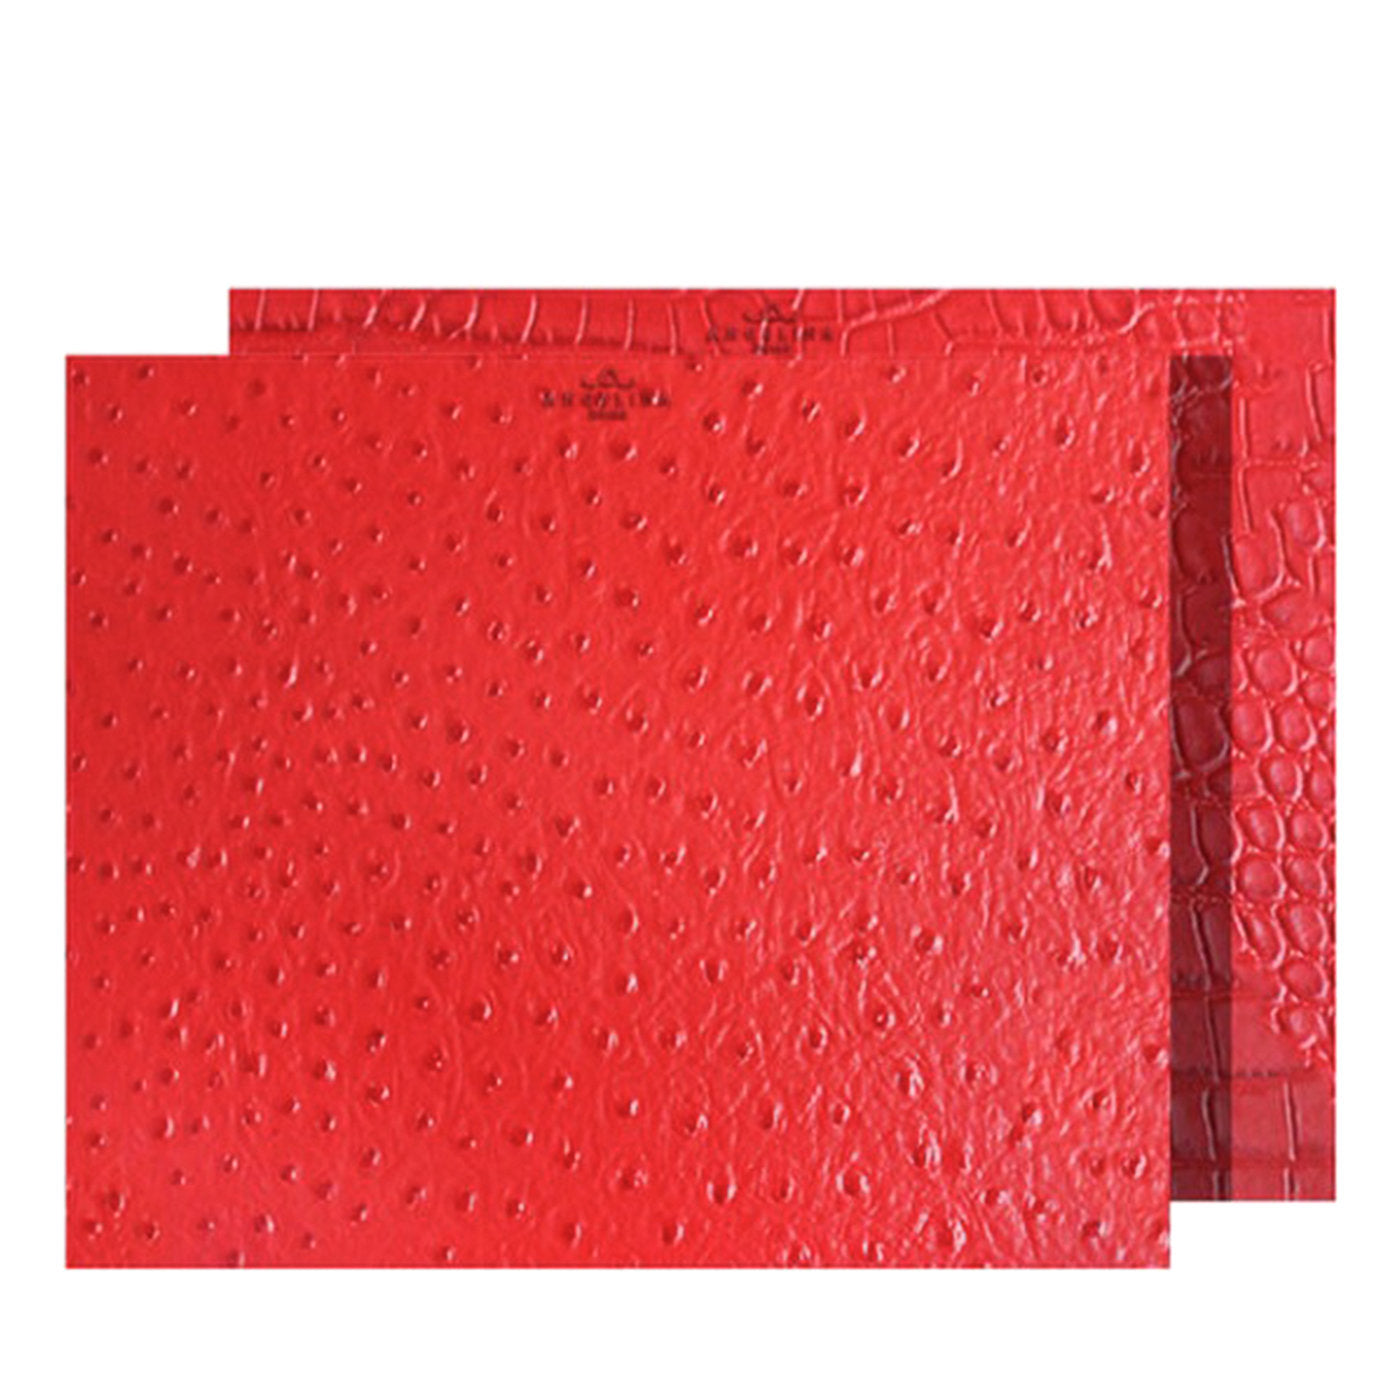 Kenya Medium Set of 2 Rectangular Red Leather Placemats - Main view